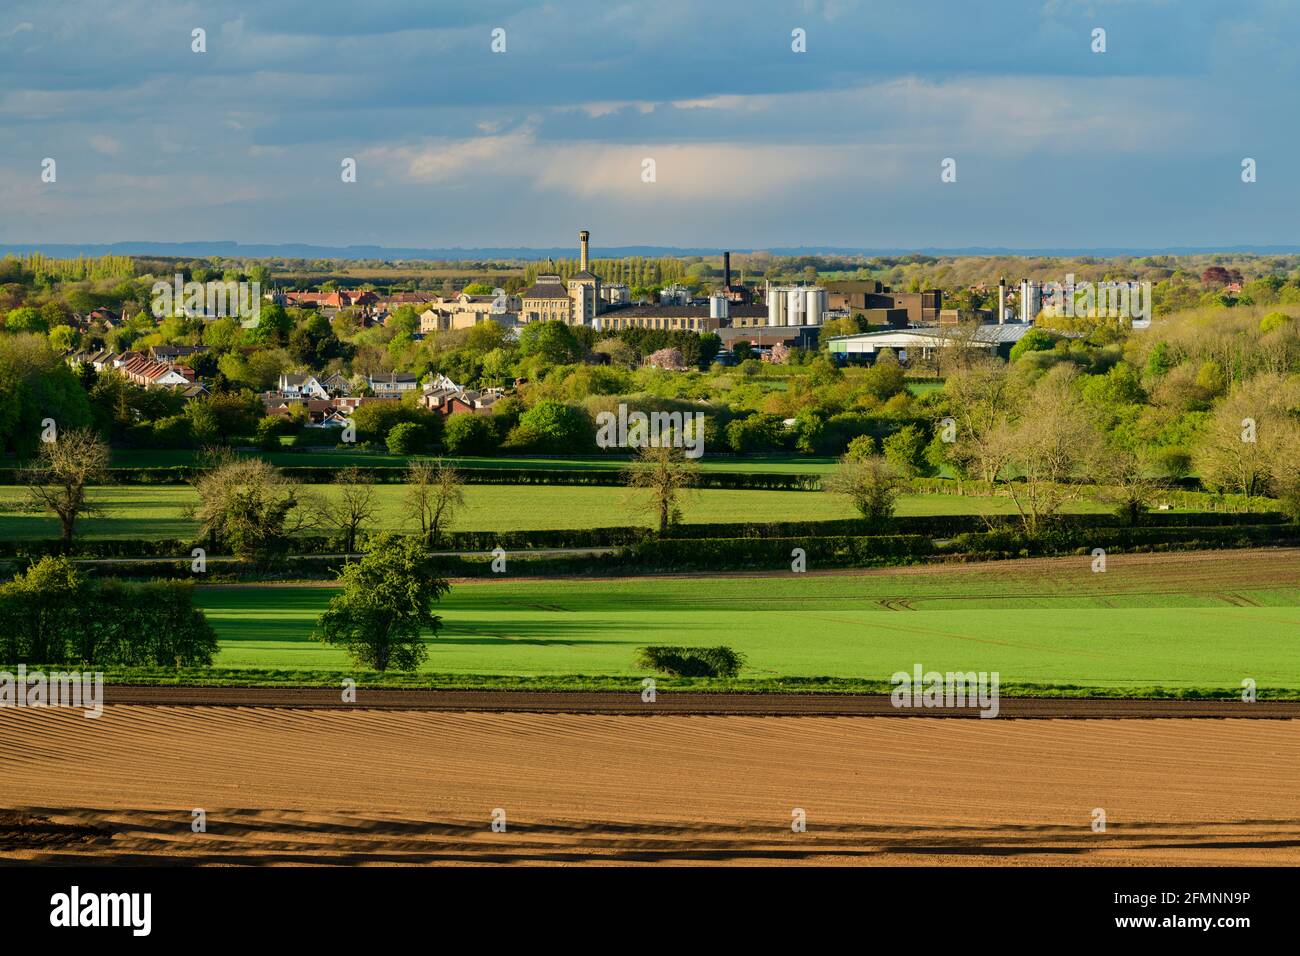 Vue pittoresque sur les terres agricoles et la ville de Tadcaster (bâtiments de brasserie, maisons) - Vale of York, North Yorkshire, Angleterre, Royaume-Uni. Banque D'Images